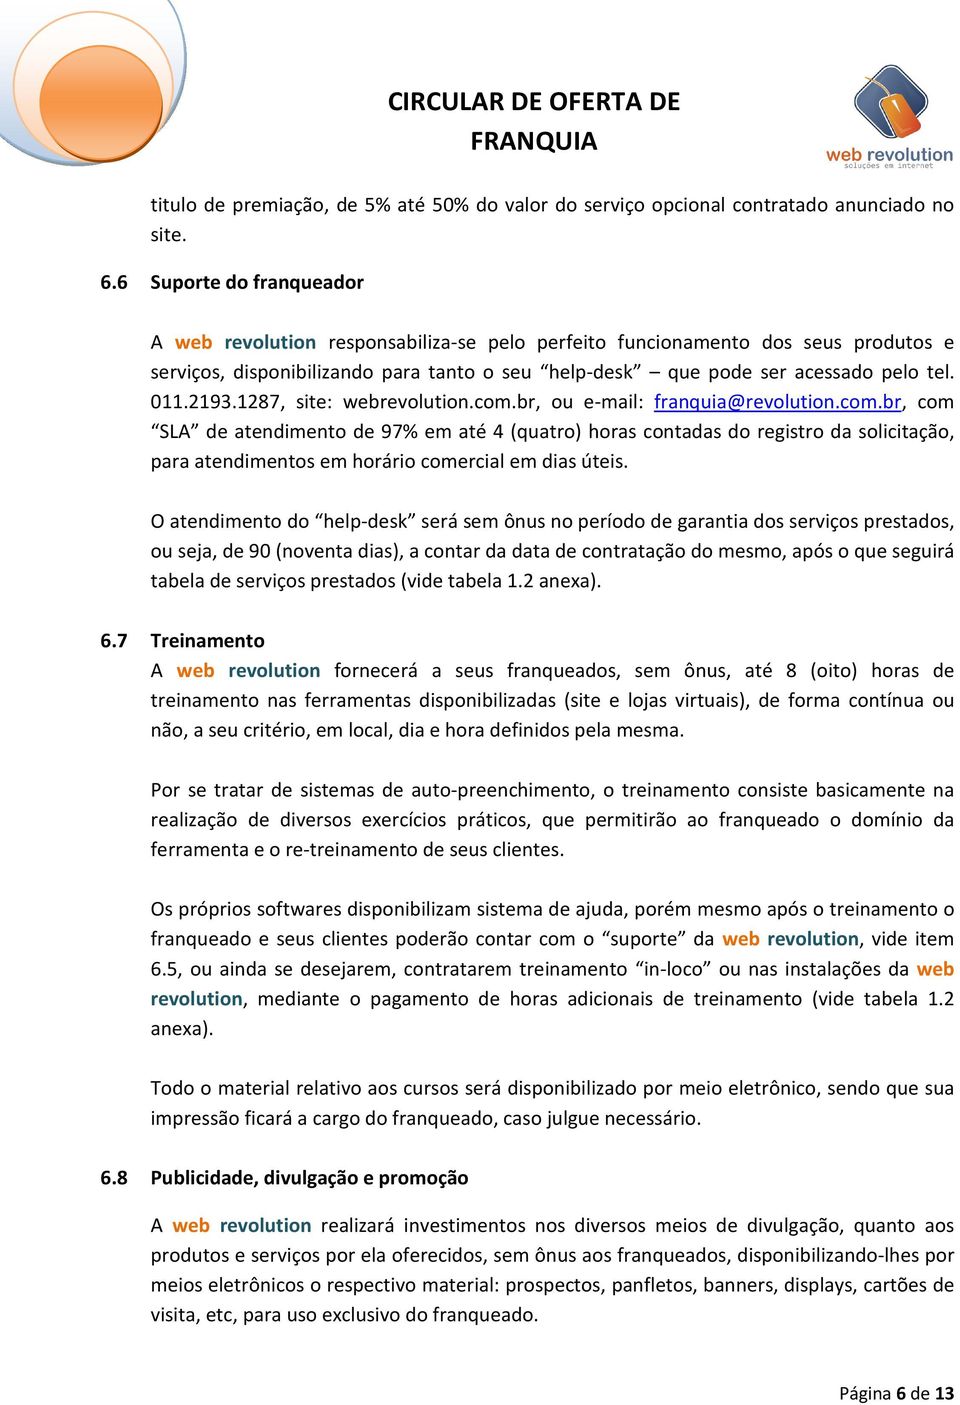 011.2193.1287, site: webrevolution.com.br, ou e-mail: franquia@revolution.com.br, com SLA de atendimento de 97% em até 4 (quatro) horas contadas do registro da solicitação, para atendimentos em horário comercial em dias úteis.